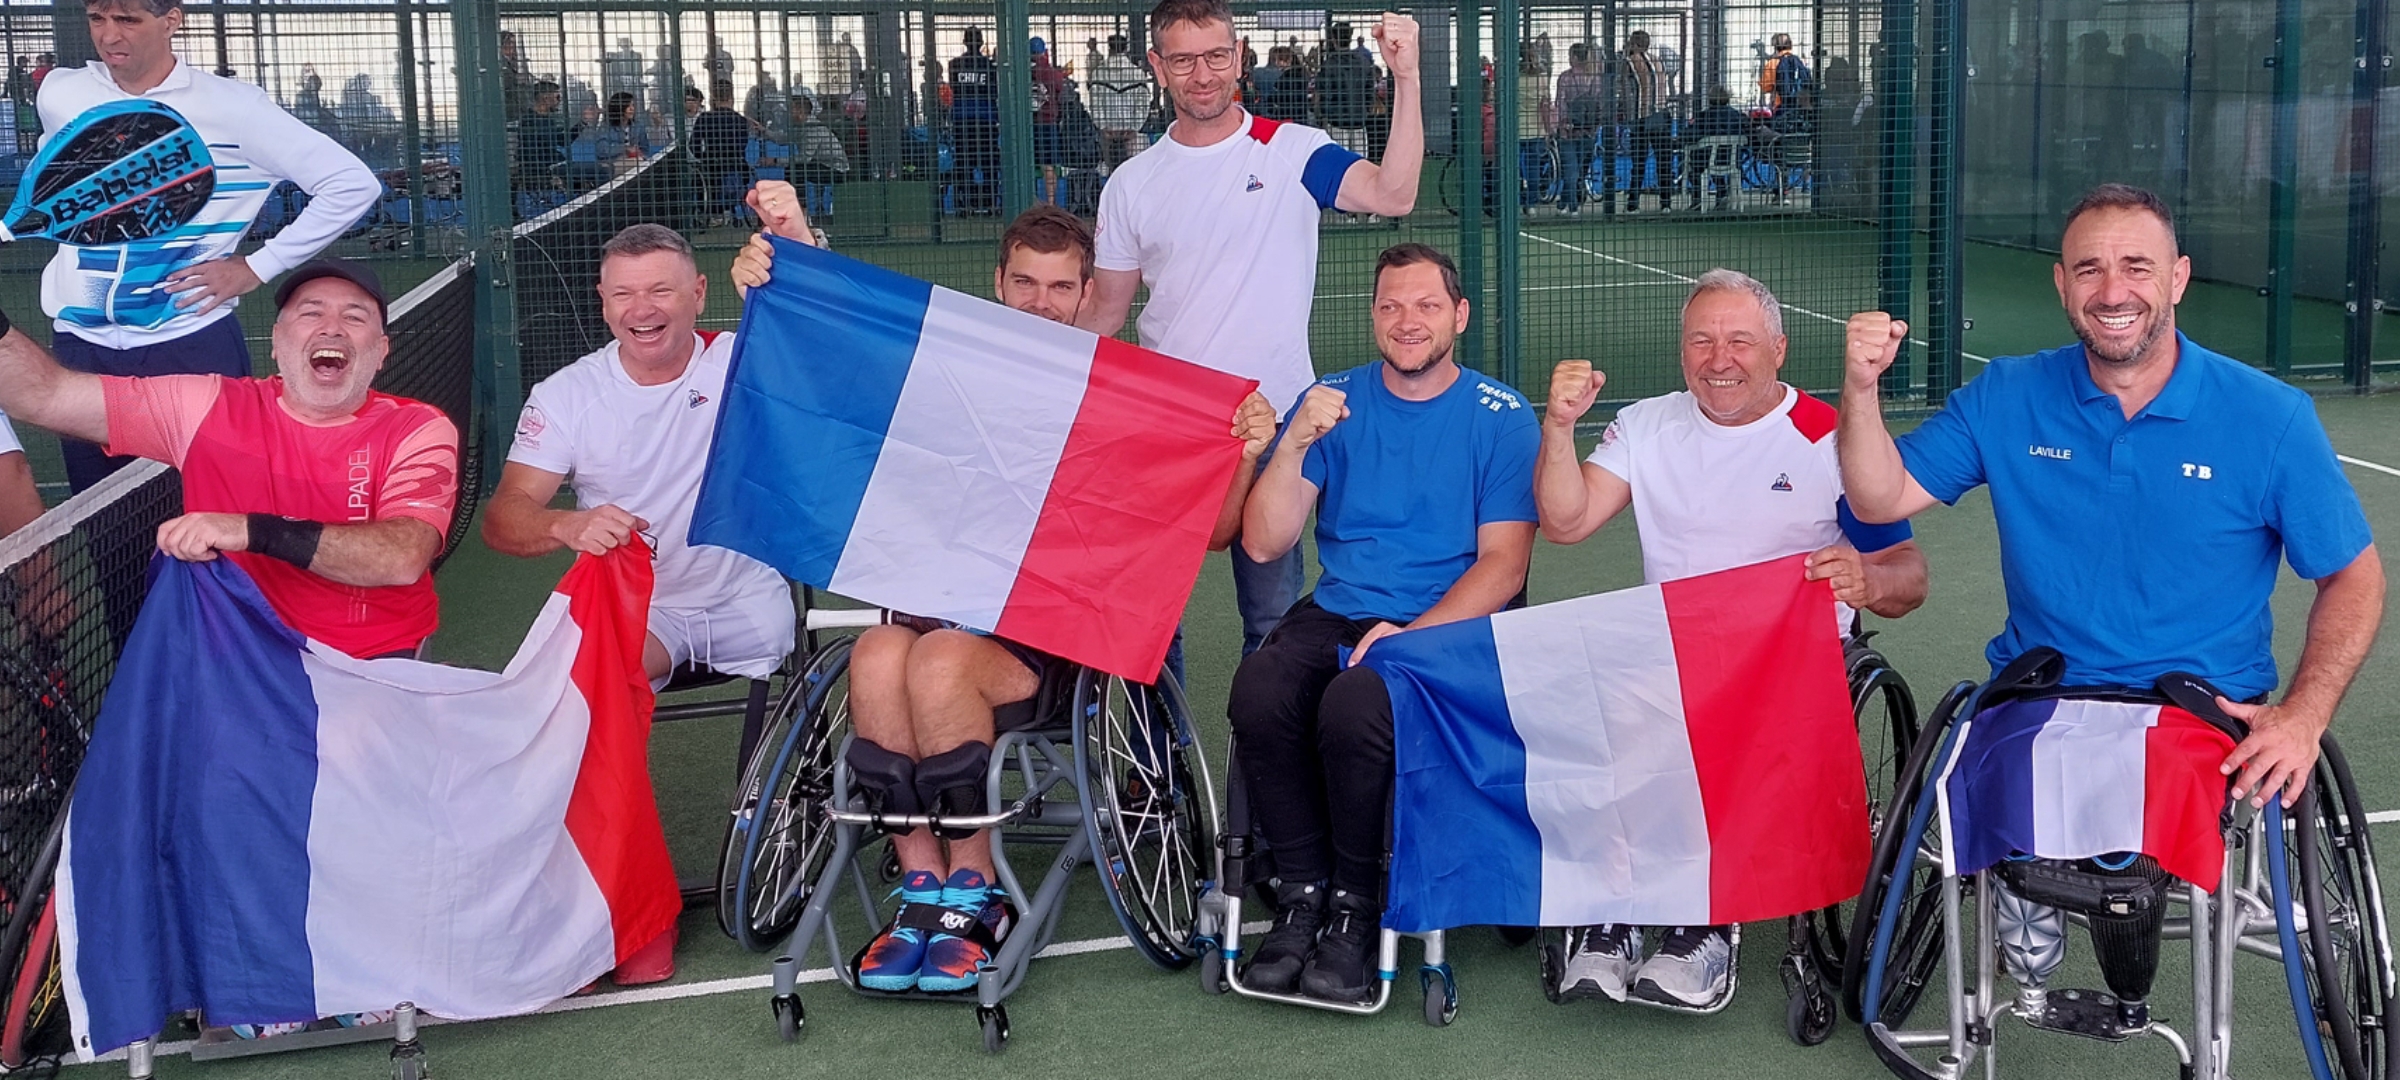 Mundos padel- sillón: Francia en bronce al vencer a Argentina